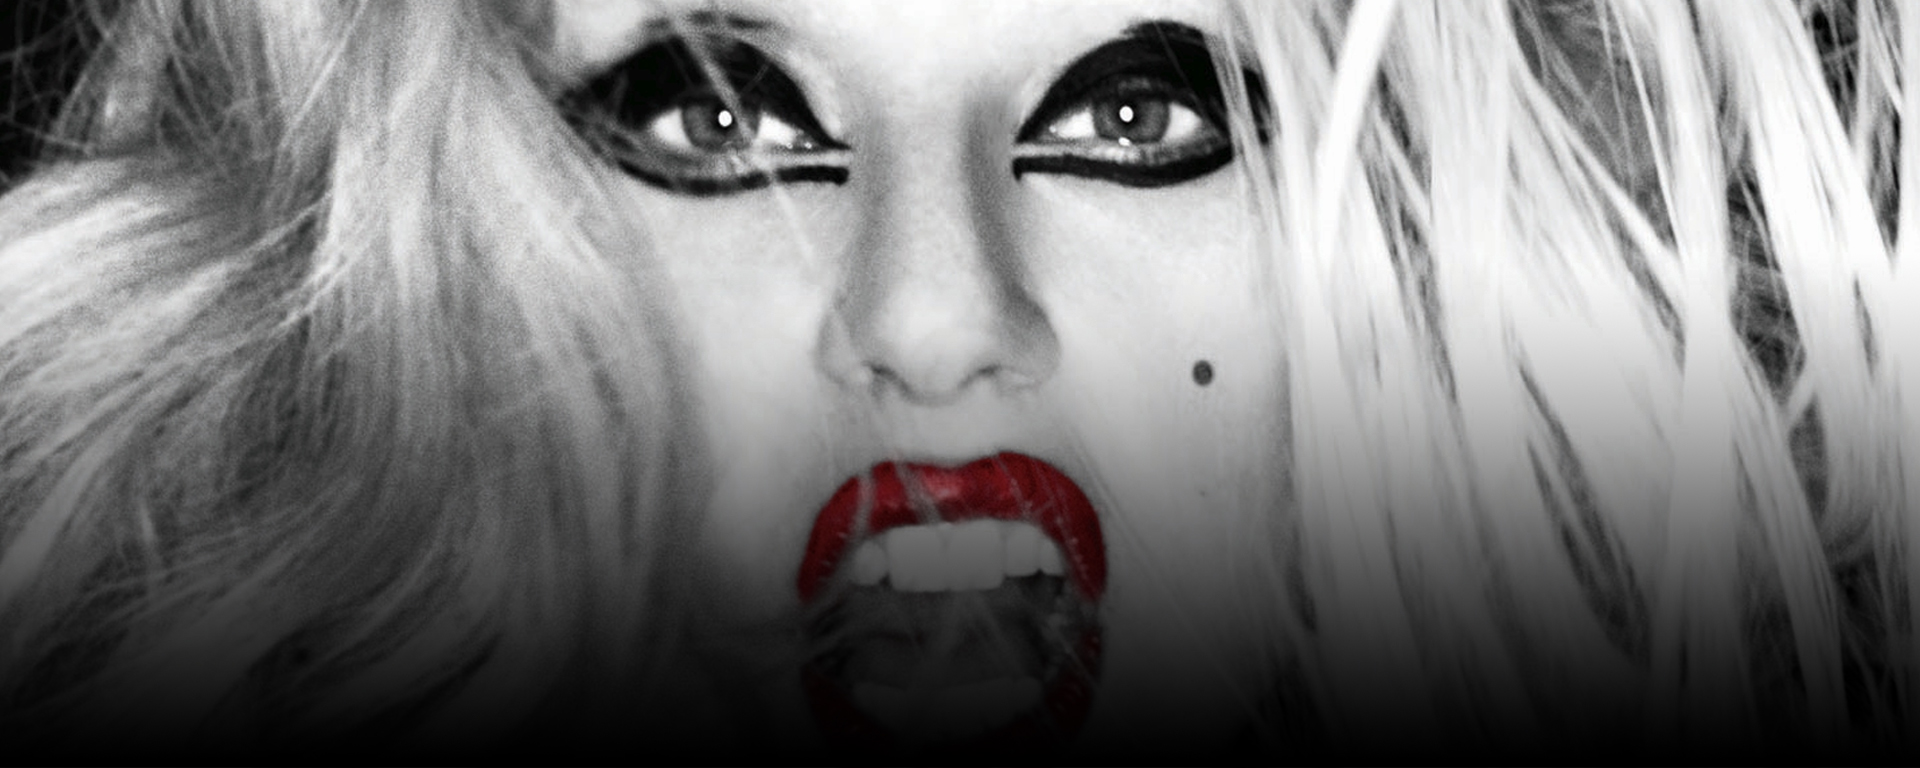 Znovuzrodená pieseň "Bloody Mary" od Lady Gaga opäť naberá na popularite vďaka TikToku.